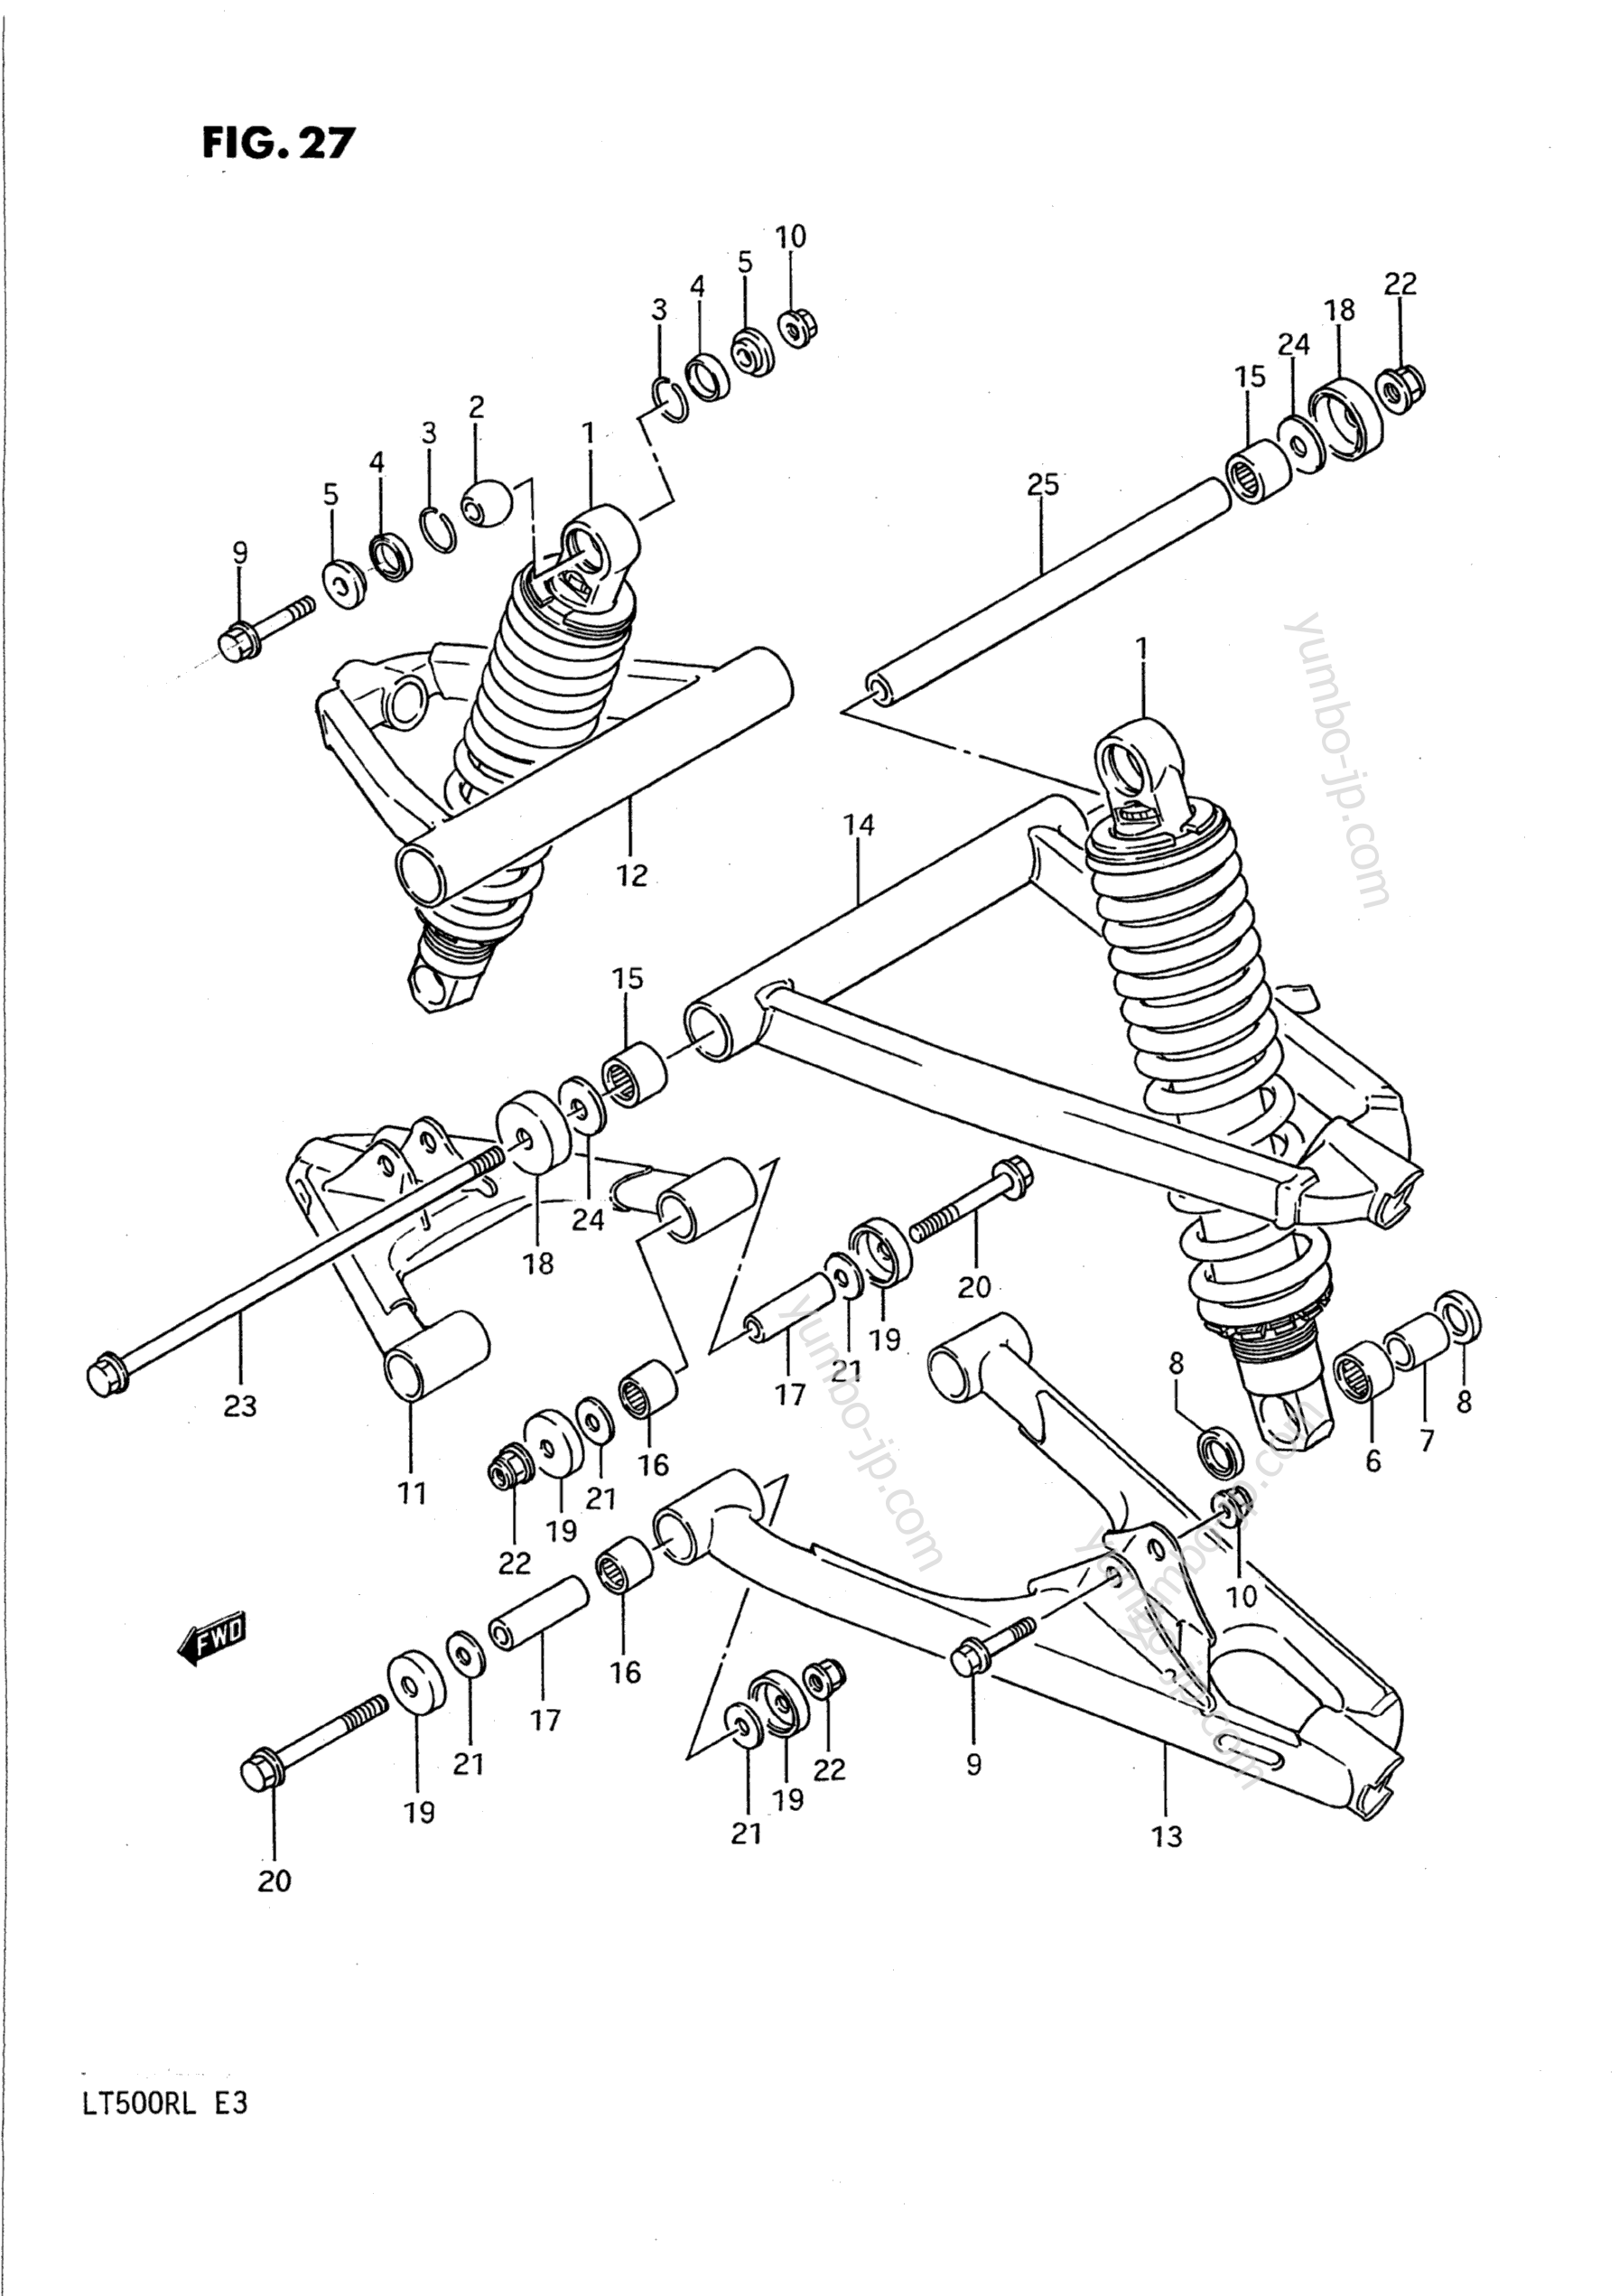 SUSPENSION ARM (MODEL H) for ATVs SUZUKI QuadRacer (LT500R) 1990 year